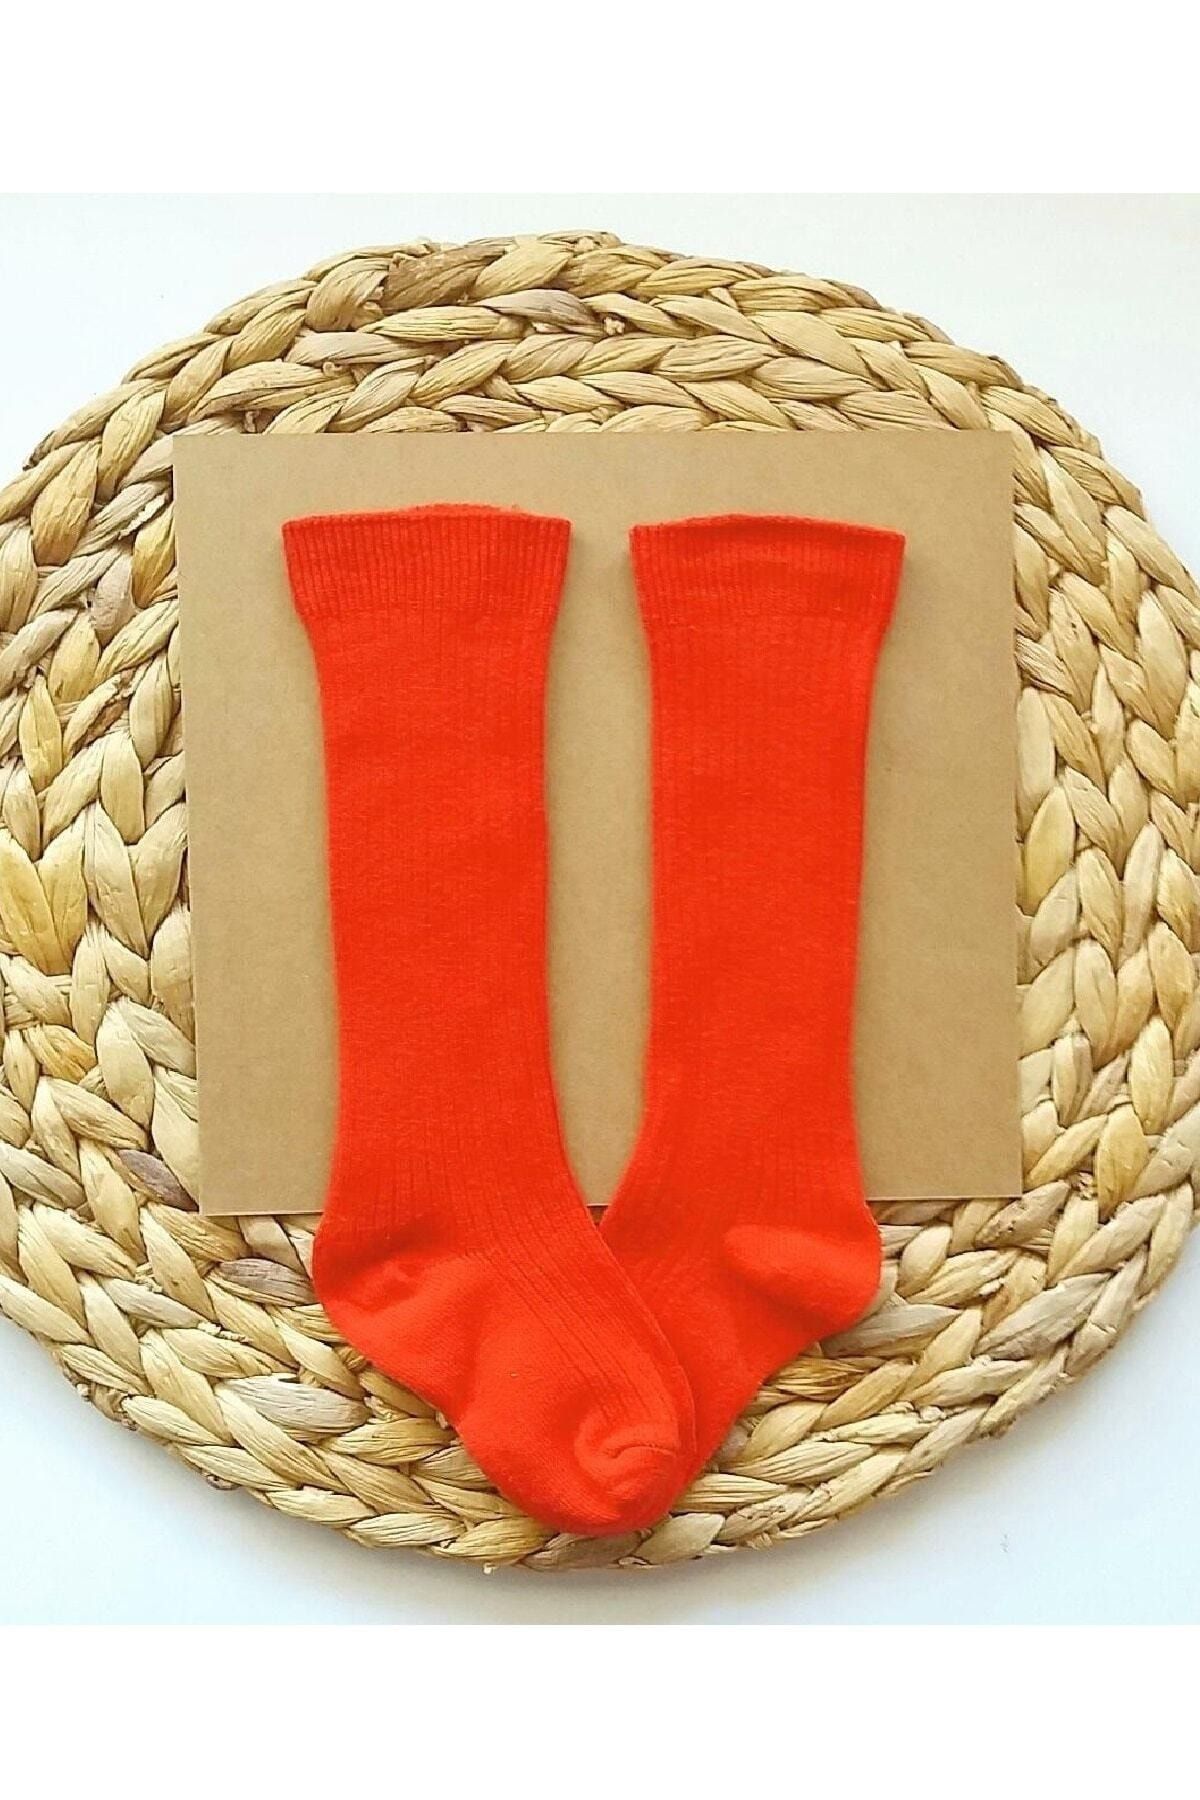 Asa Bebek Çocuk Kız Bebek Düz Fitilli Kırmızı Diz Altı Çorap Bebek Çorapları